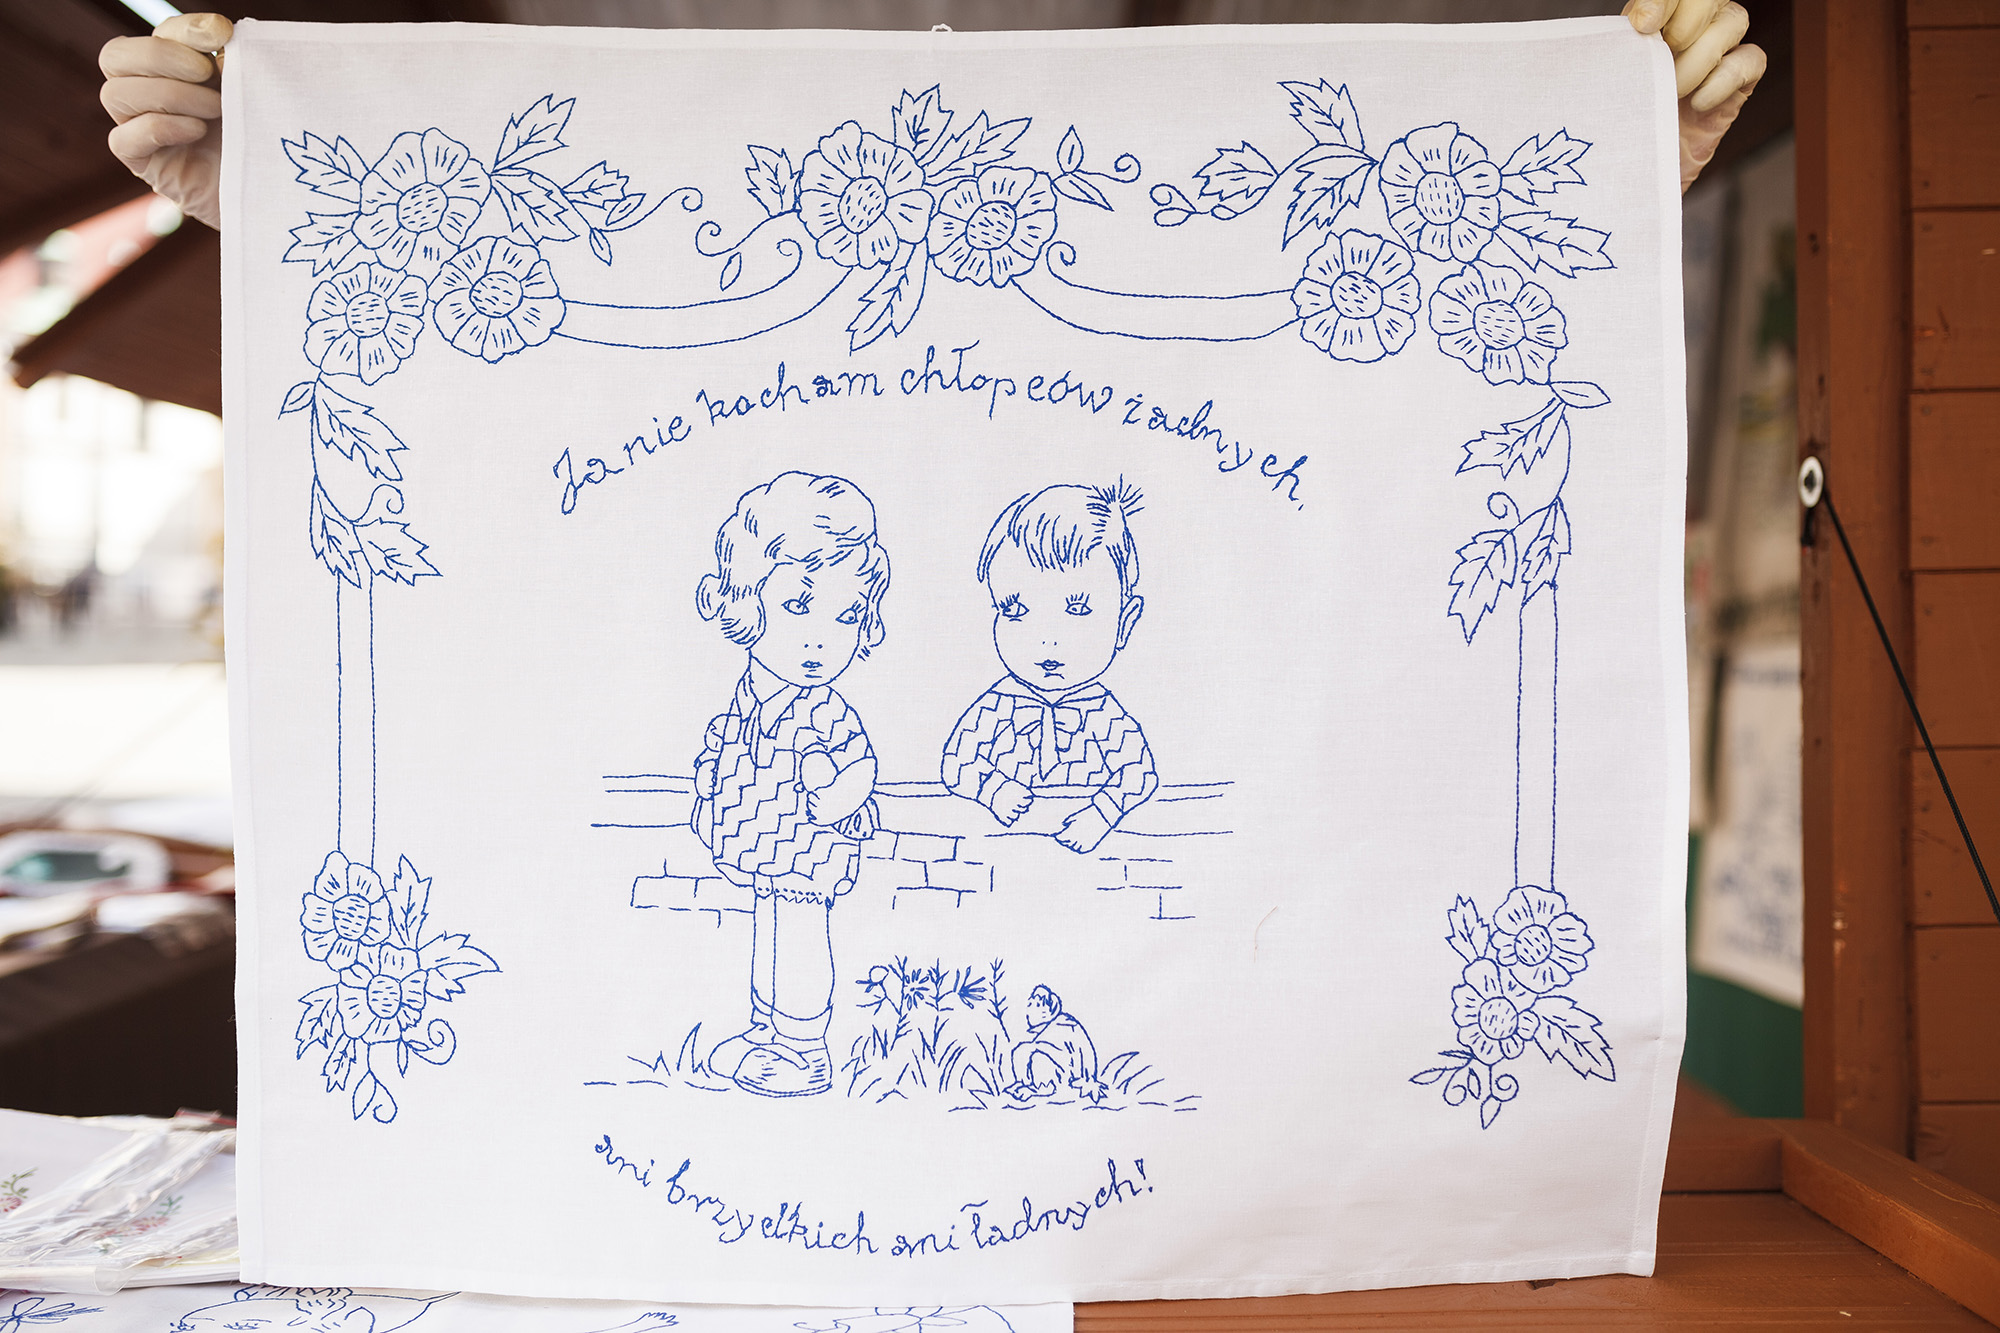 [Haft wykonany niebieską nicią na białej tkaninie, przedstawia chłopca z dziewczynką, dookoła nich napis:"ja nie kocham chłopców żadnych, ani brzydkich ani ładnych!"]